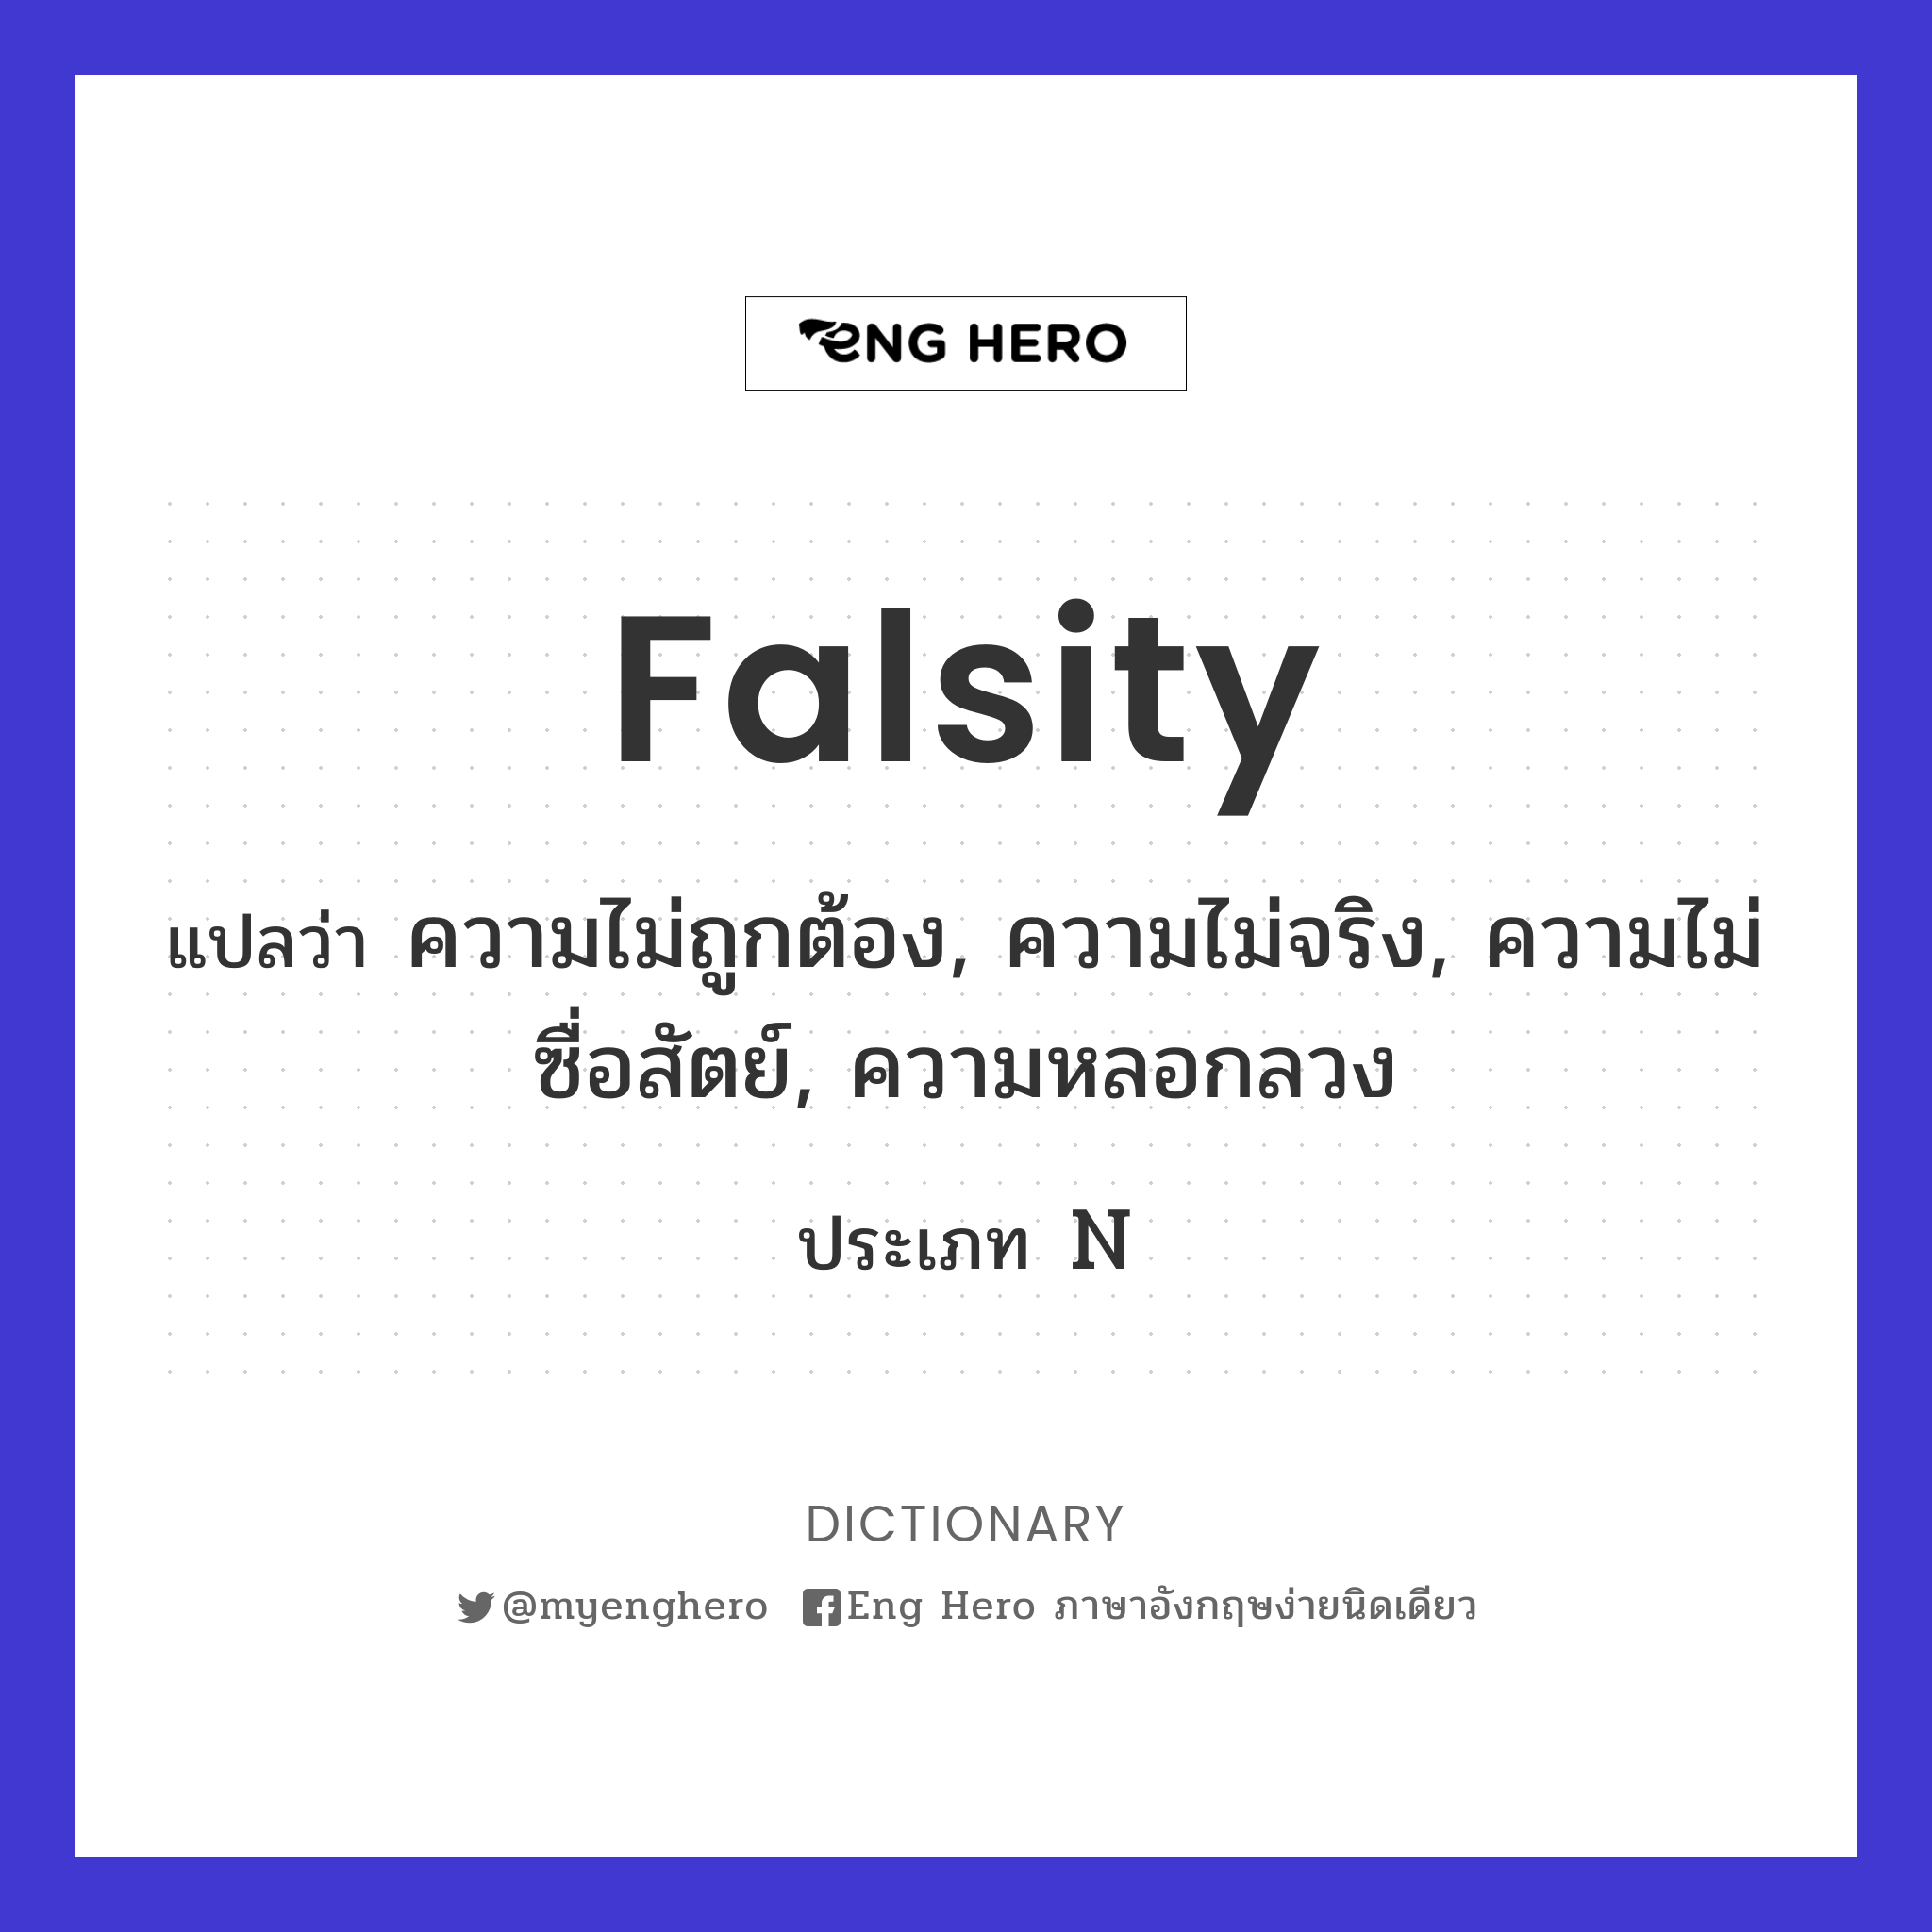 falsity